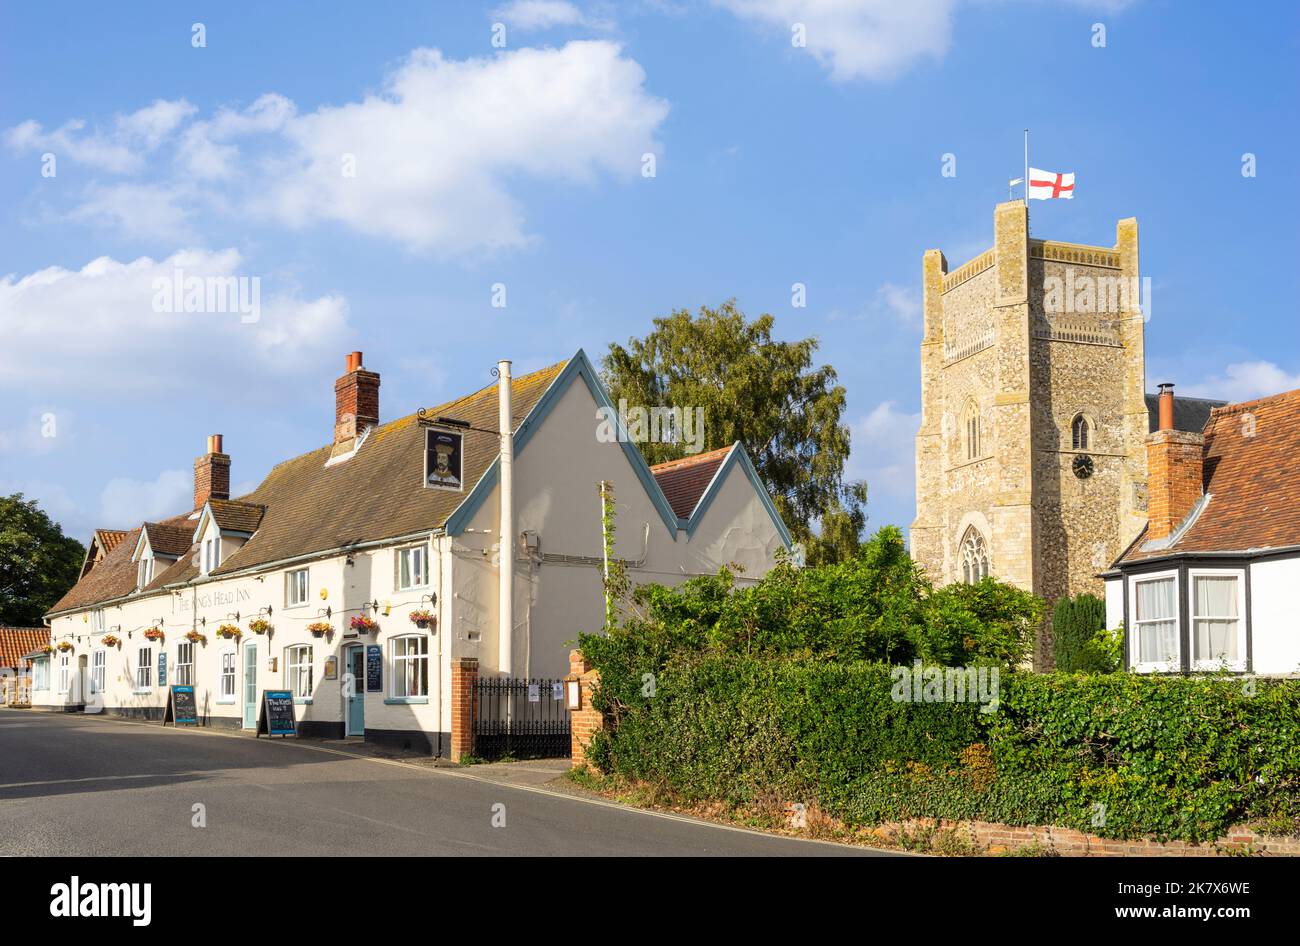 Le Kings Head Inn et l'église St Bartholomew dans le village d'Orford Suffolk Angleterre Royaume-Uni Europe Banque D'Images